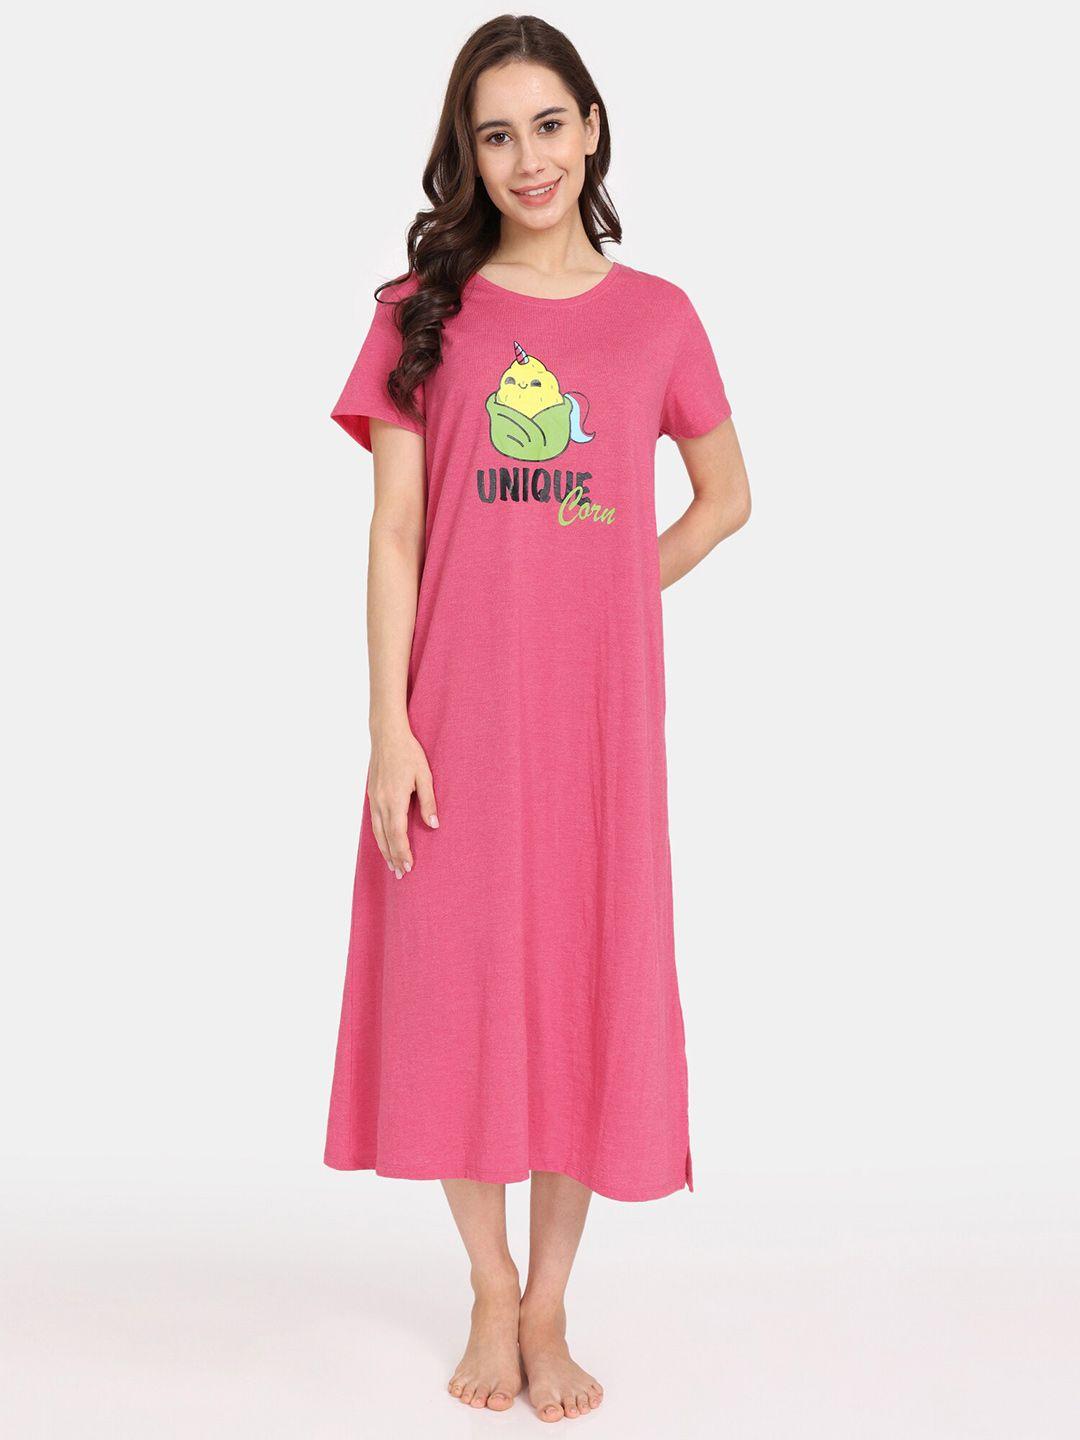 rosaline-by-zivame-graphic-printed-midi-t-shirt-nightdress